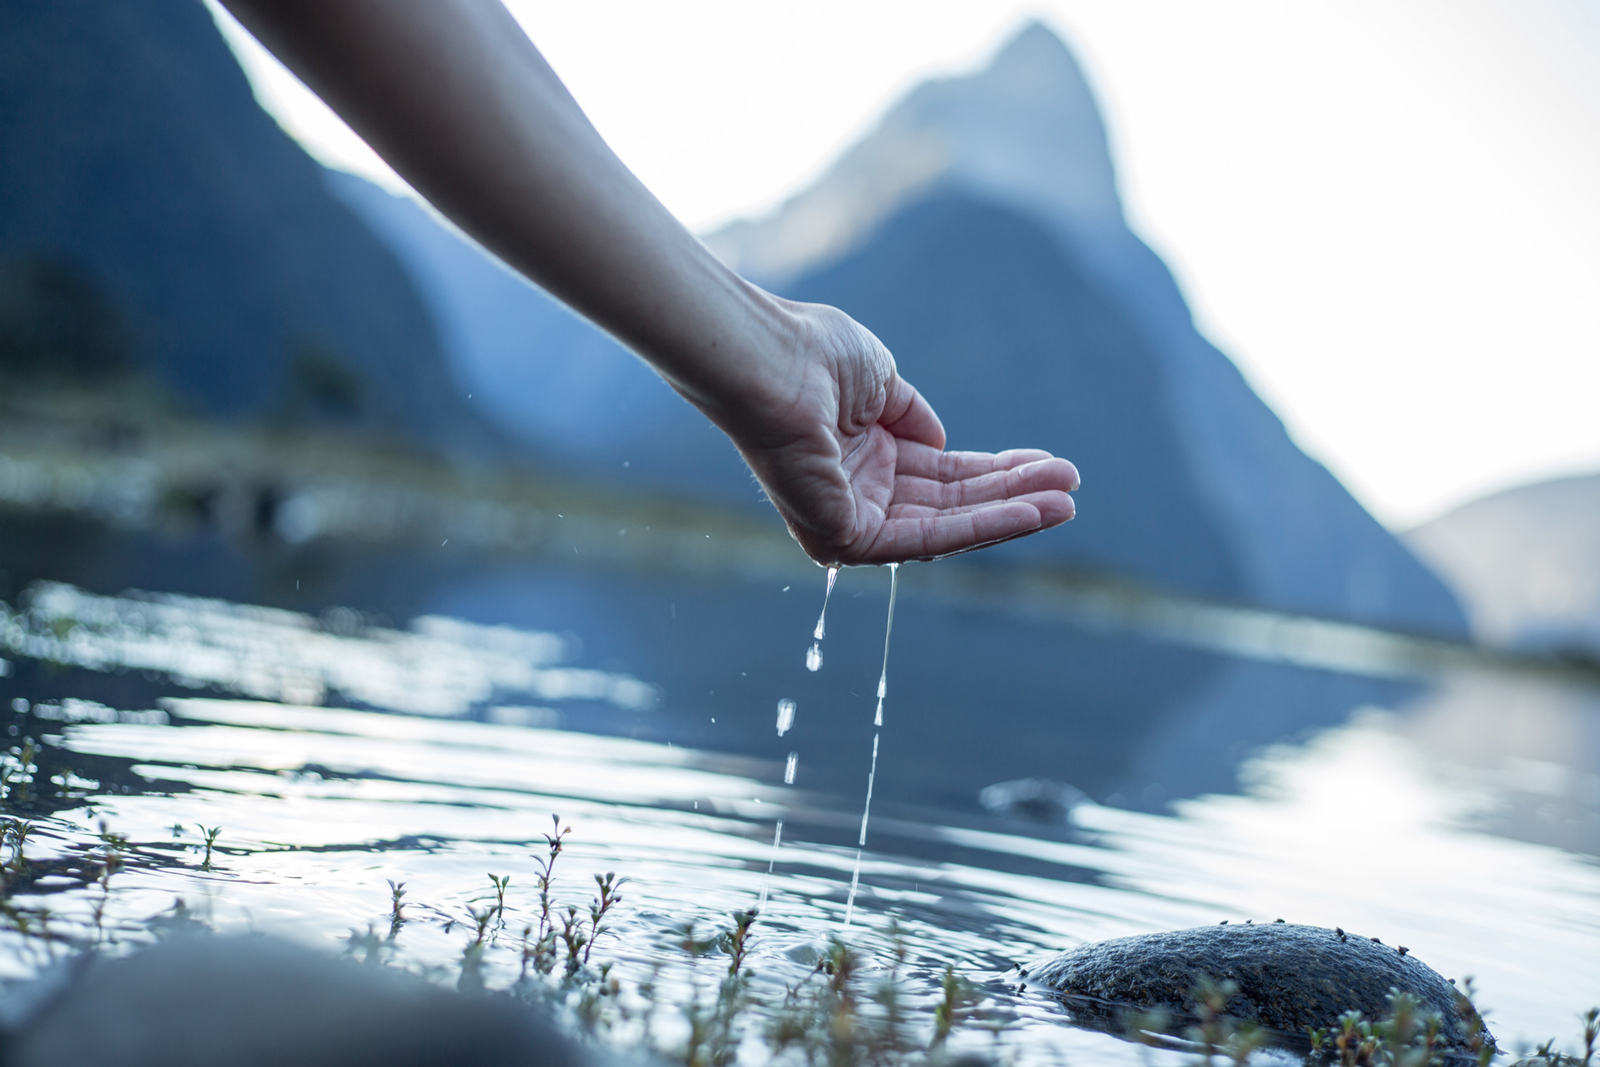 Symboldbild für den Weltwassertag: Eine Hand schöpft Wasser aus einem Bergsee